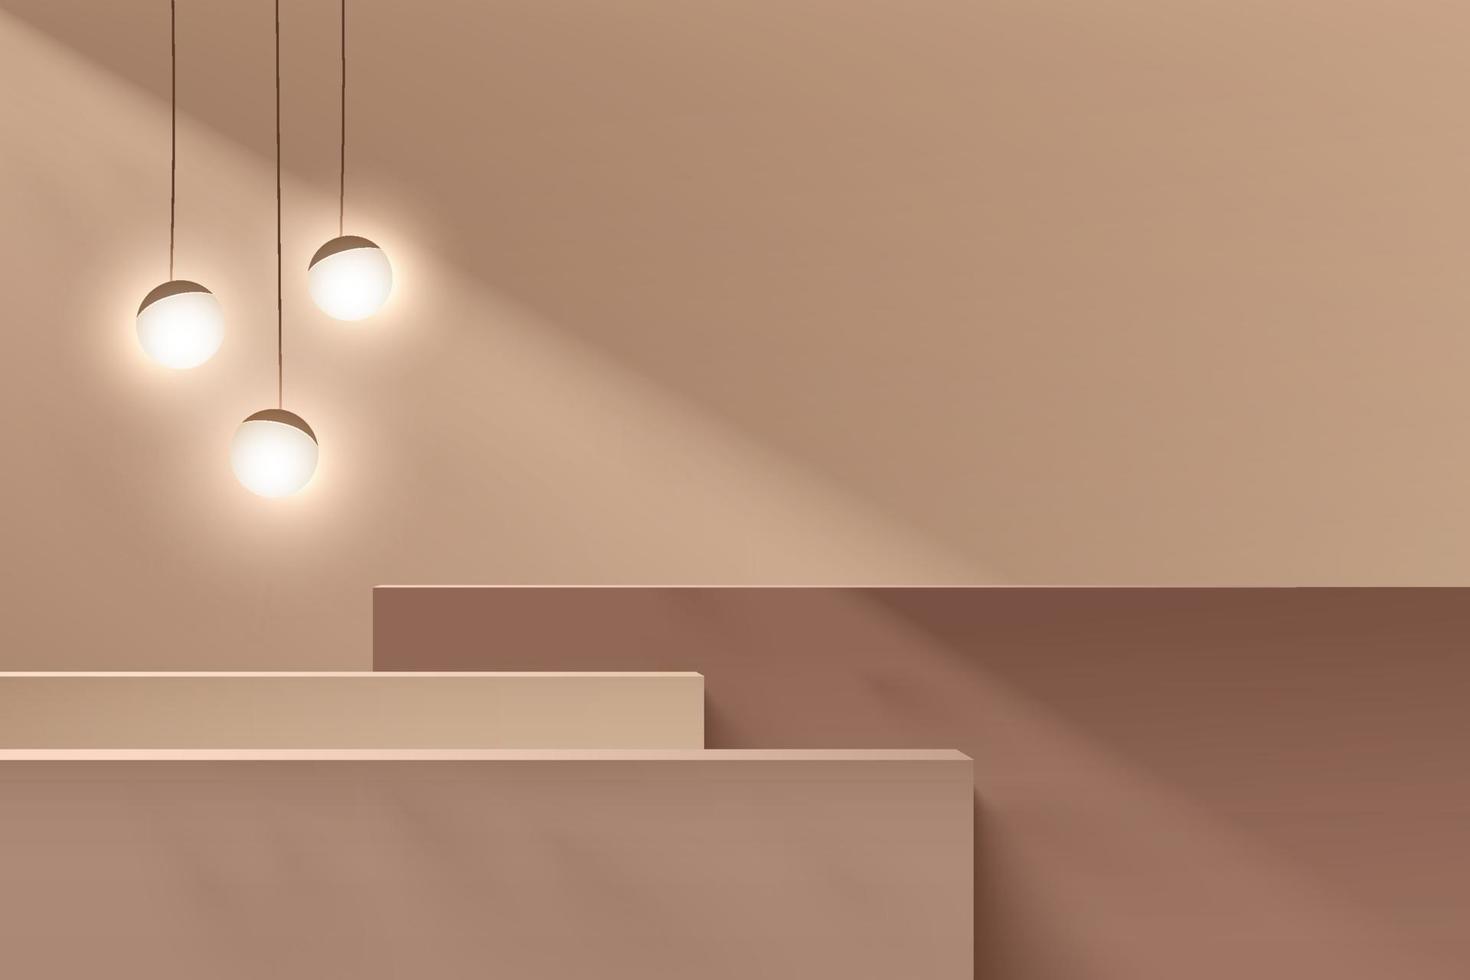 abstract bruin en beige 3d stappen kubus voetstuk of stand podium met bolbol hanglamp. minimale wandscène voor presentatie van cosmetische producten. vector geometrische rendering platform ontwerp.